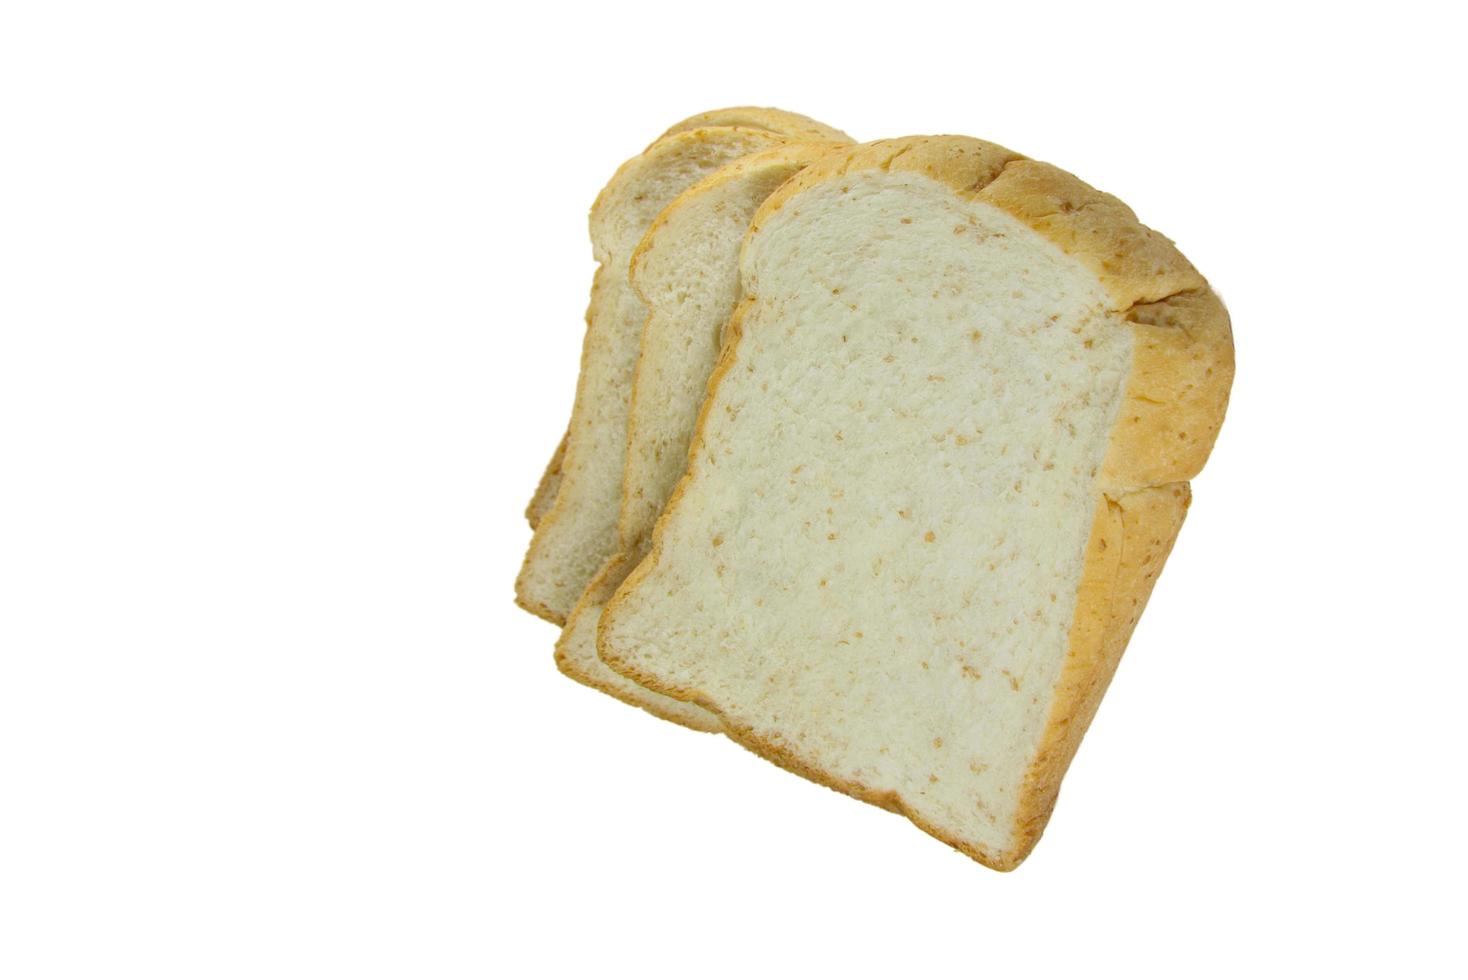 pagnotta di pane su sfondo bianco foto